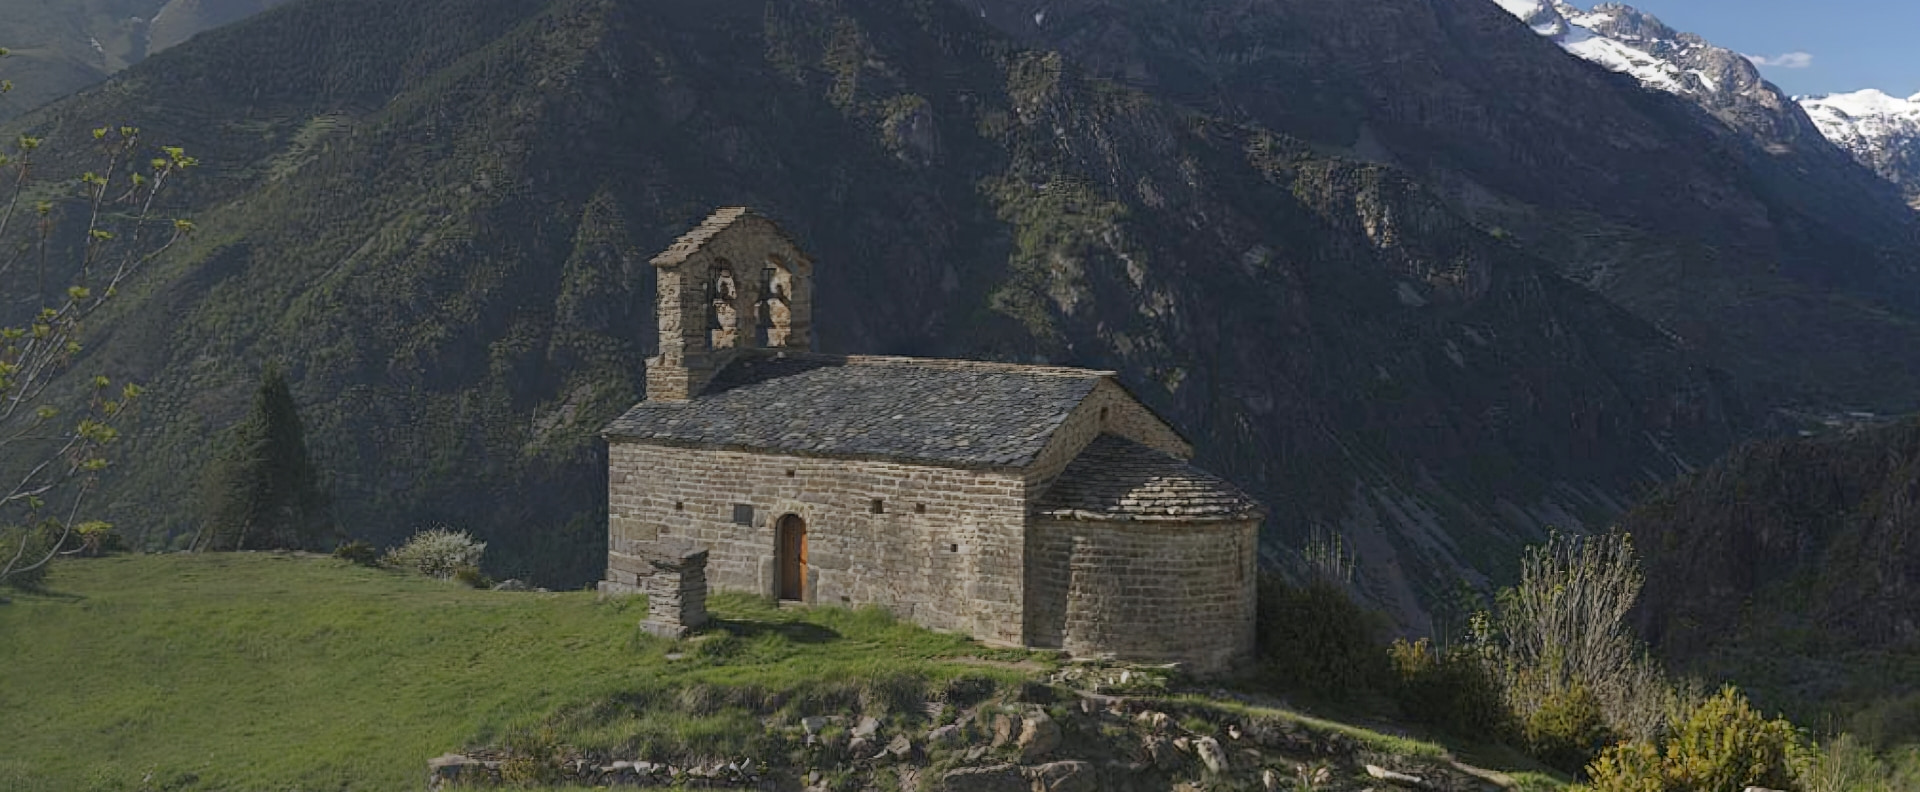 Iglesia del románico en la vall de boí situada en lo alto de una montaña